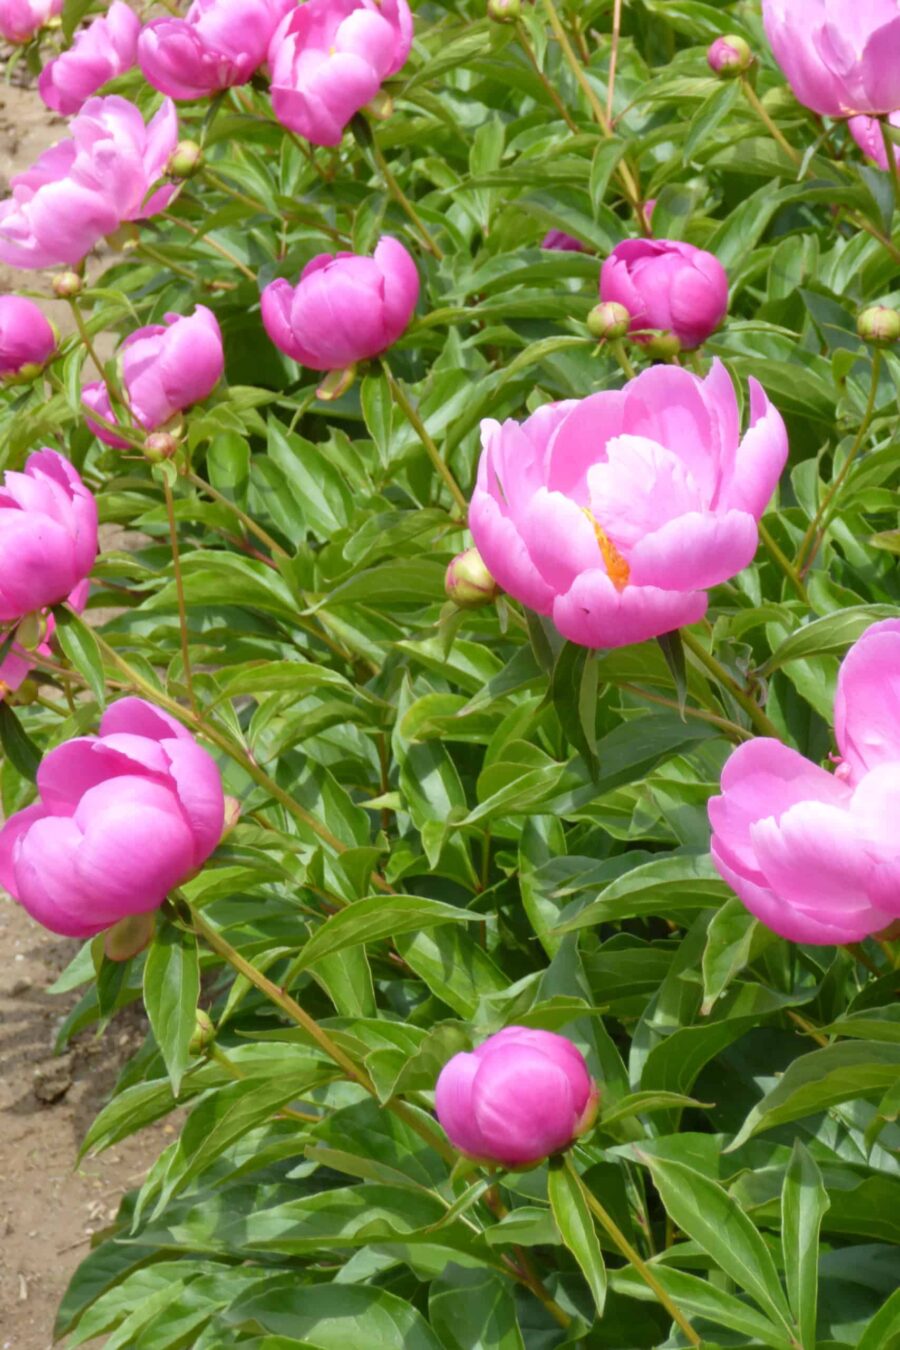 Paeonia lactiflora ´Holbein´ – Stauden-Pfingstrose einfach, rosa (Bioland-Anbau Gärtnerei Stefan Huthmann)